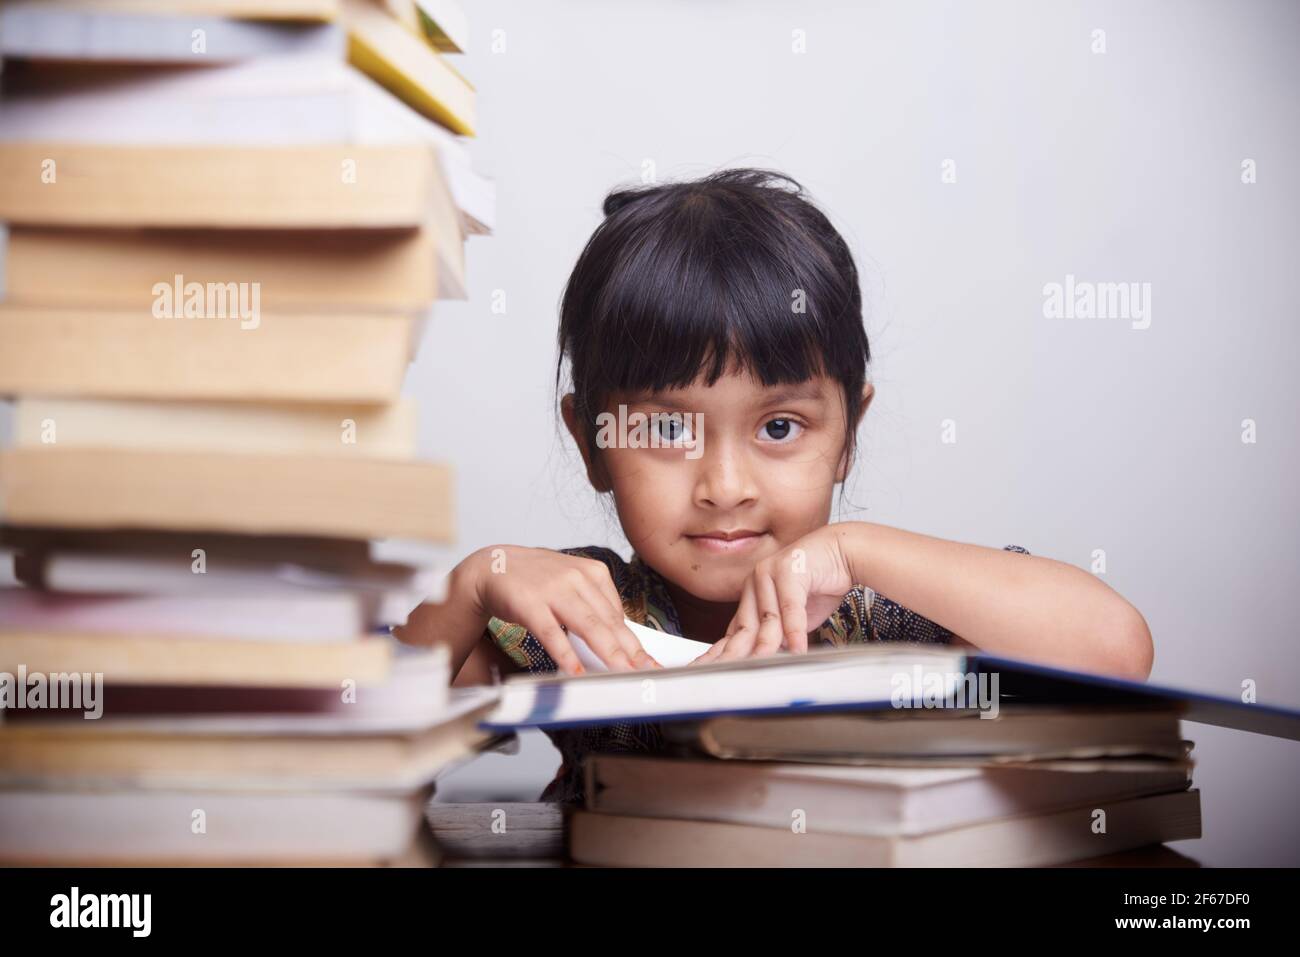 Nettes kleines Mädchen mit Haufen von Büchern zu studieren und Hausaufgaben zu Hause machen Stockfoto